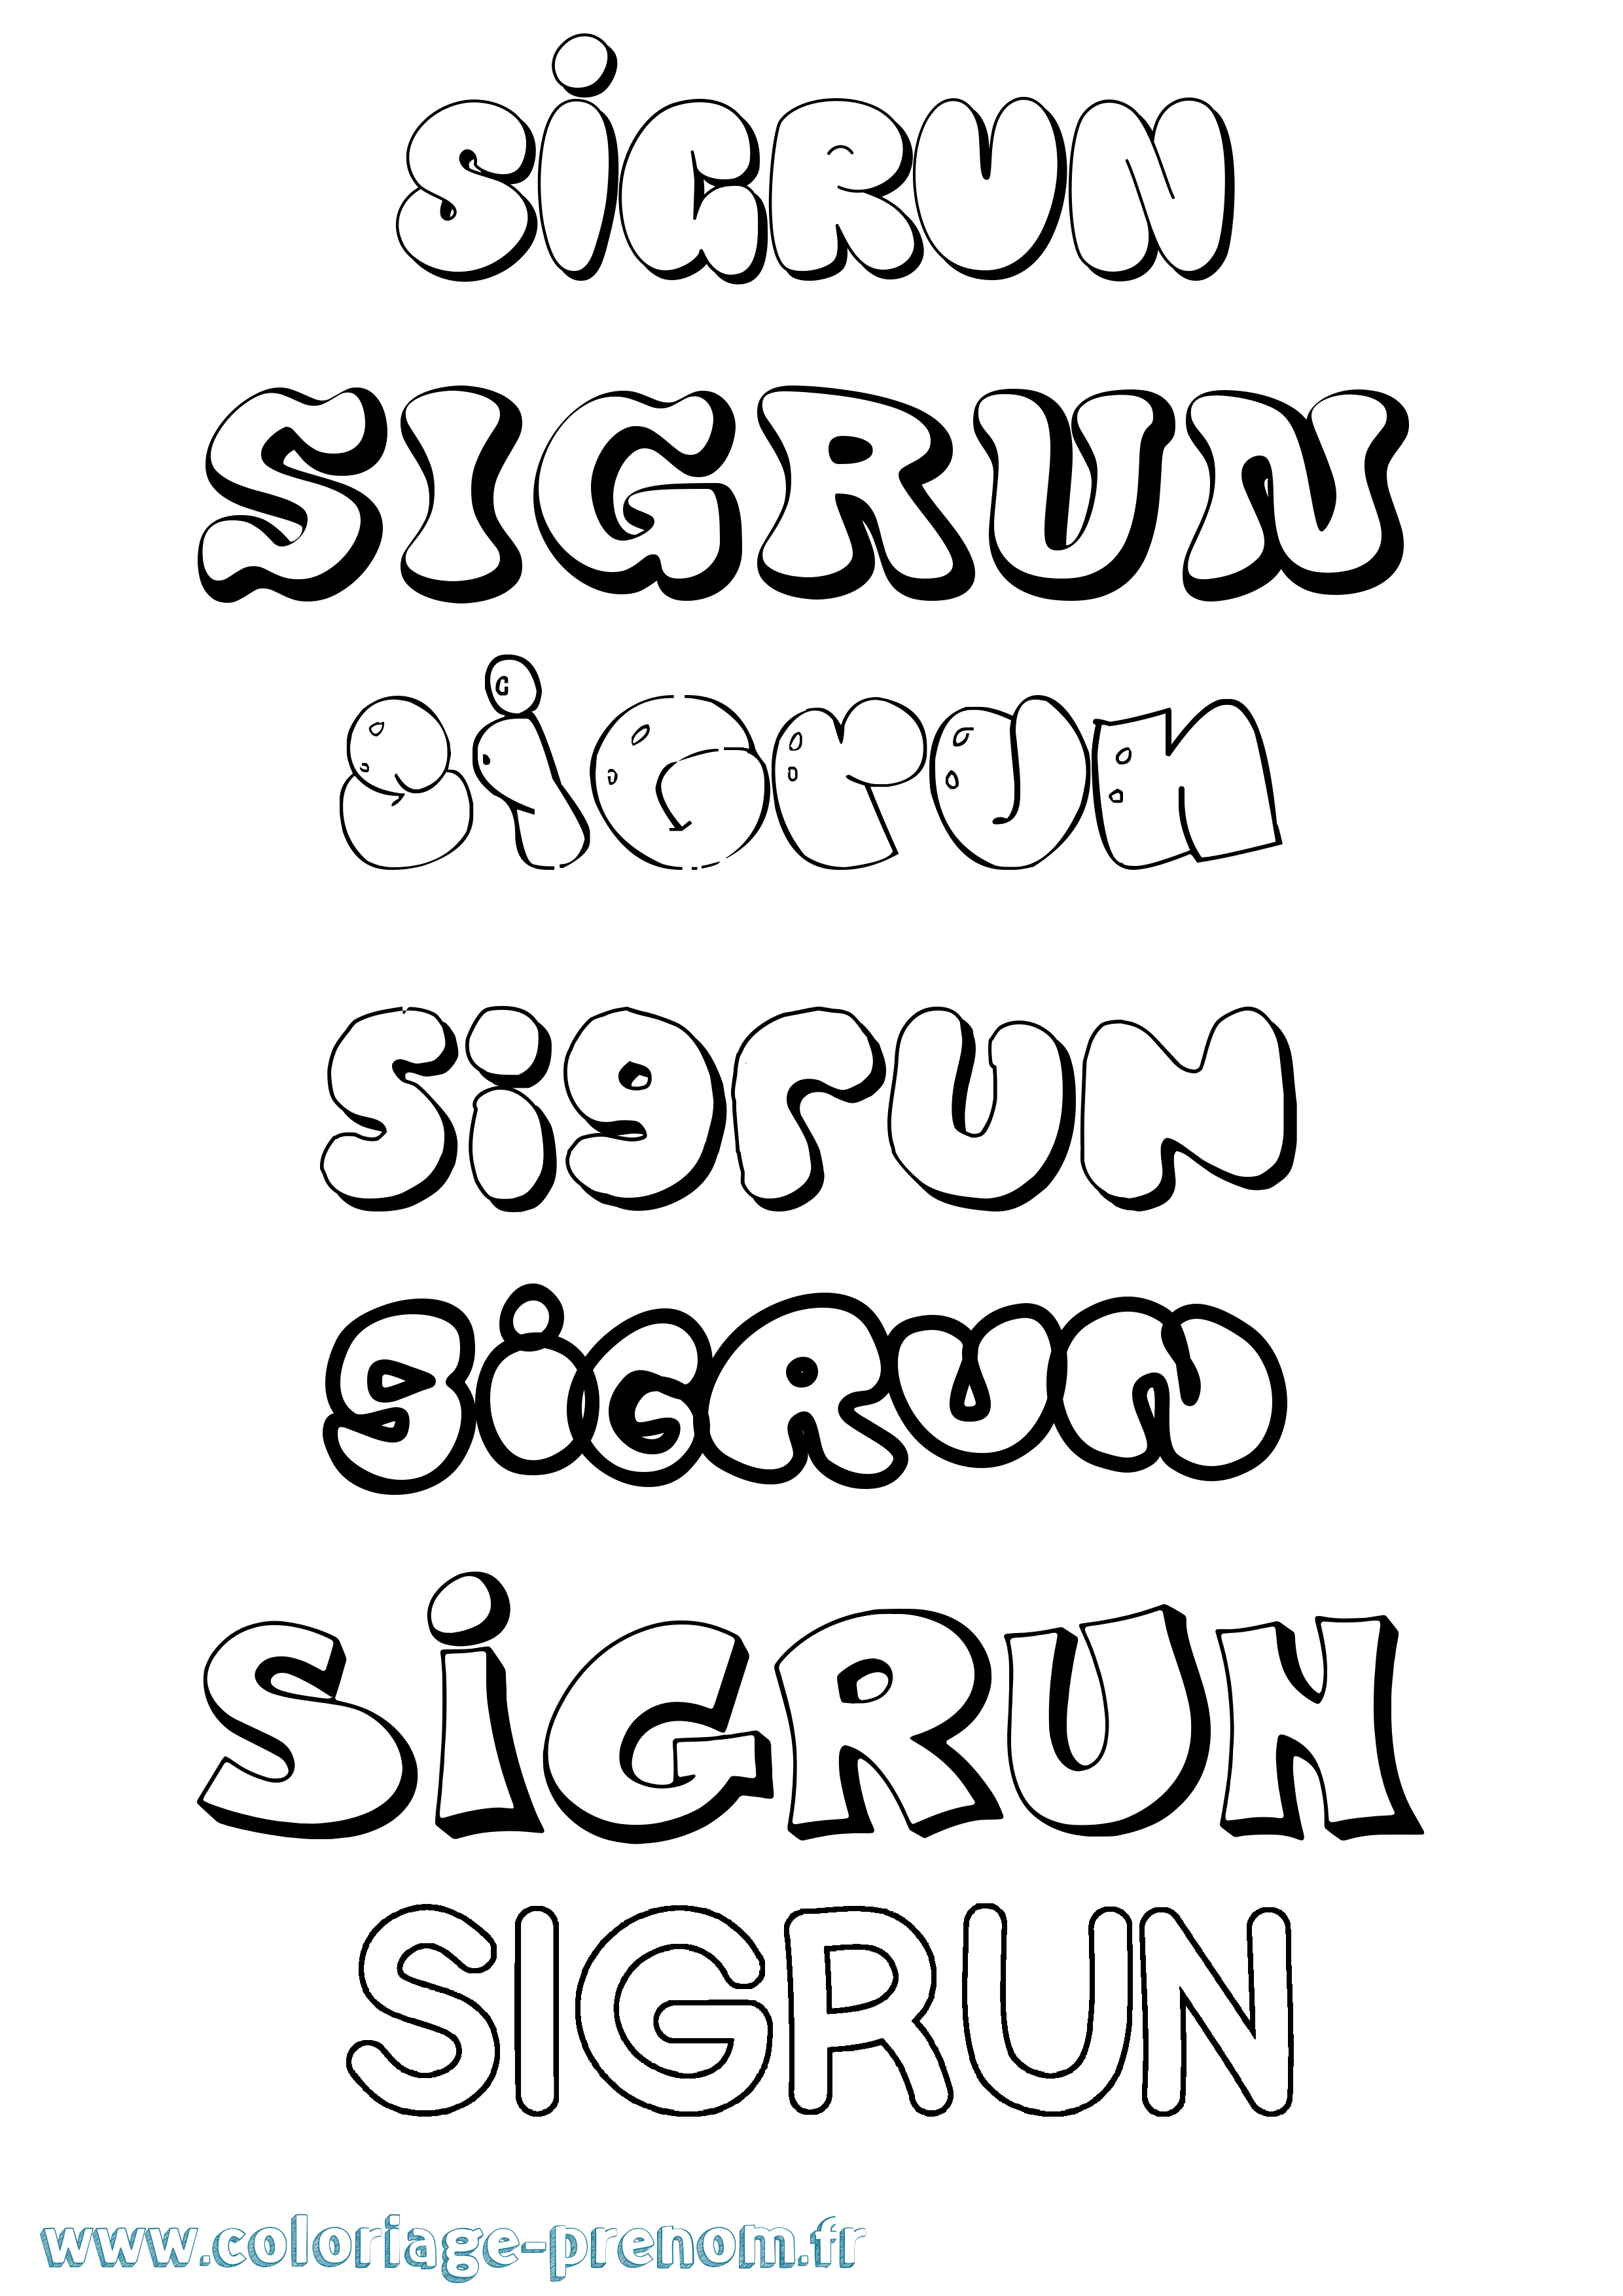 Coloriage prénom Sigrun Bubble